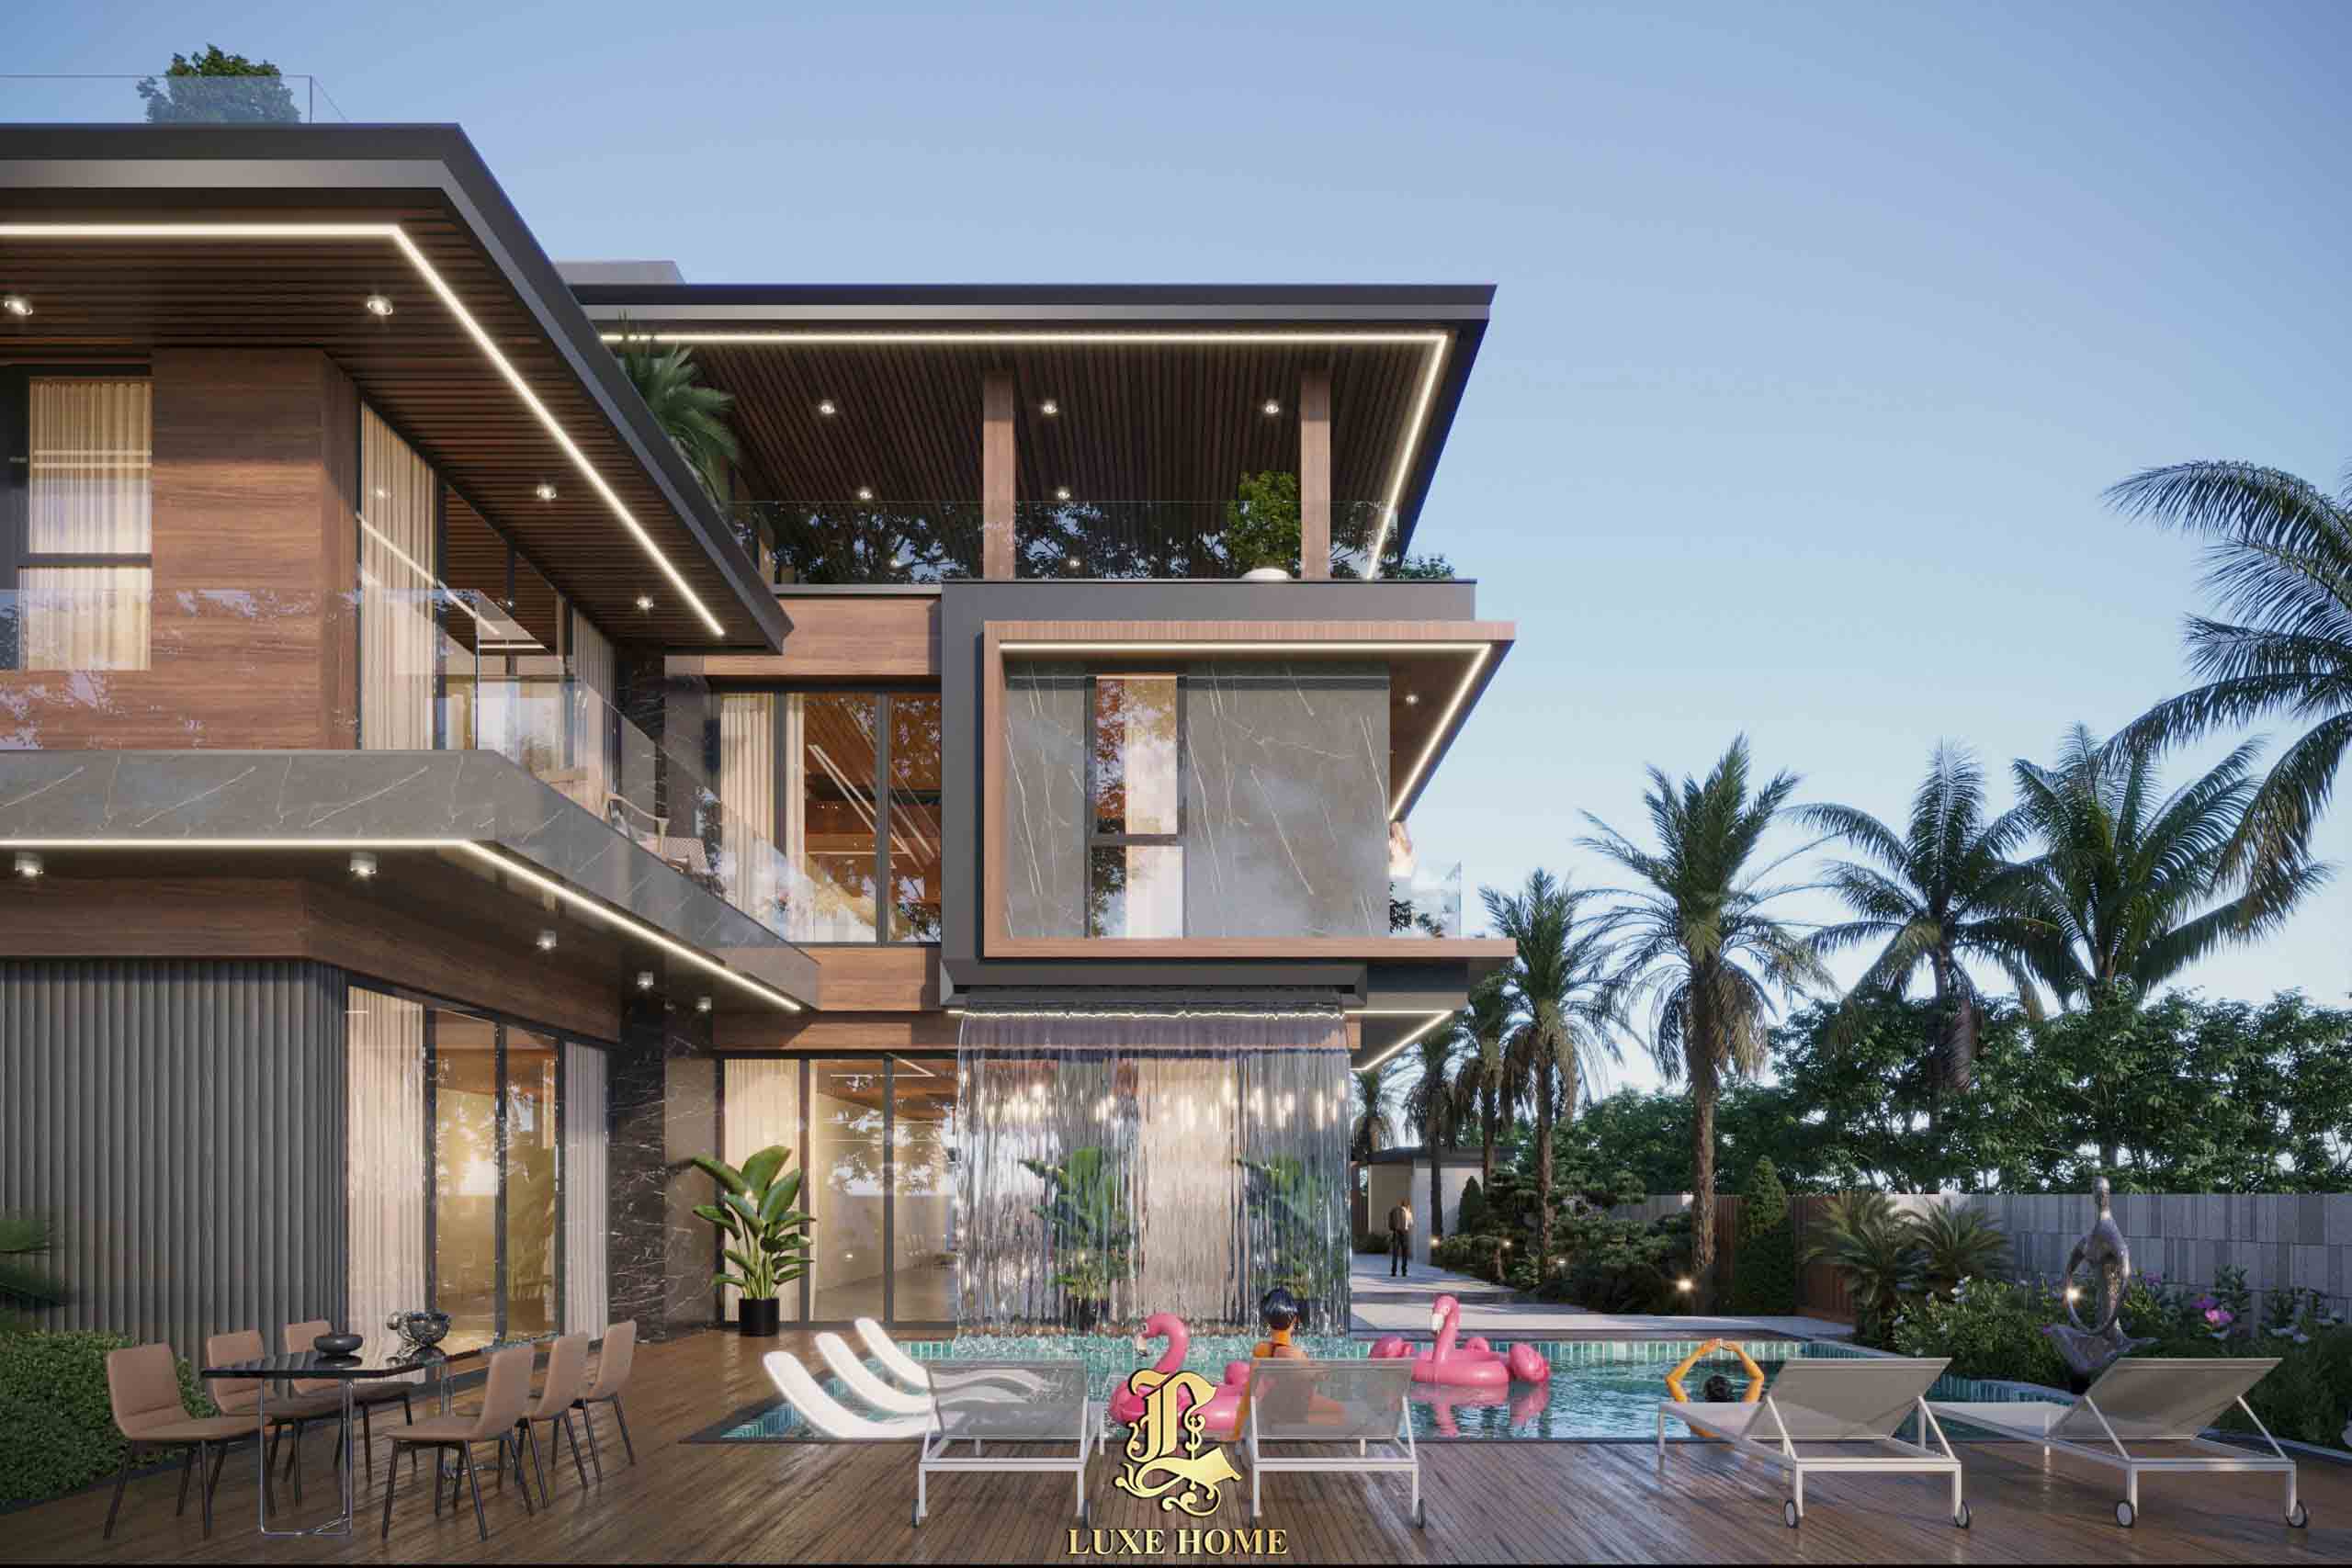 Thiết kế mẫu biệt thự villa 3 tầng hiện đại, sang trọng tại Vũng Tàu